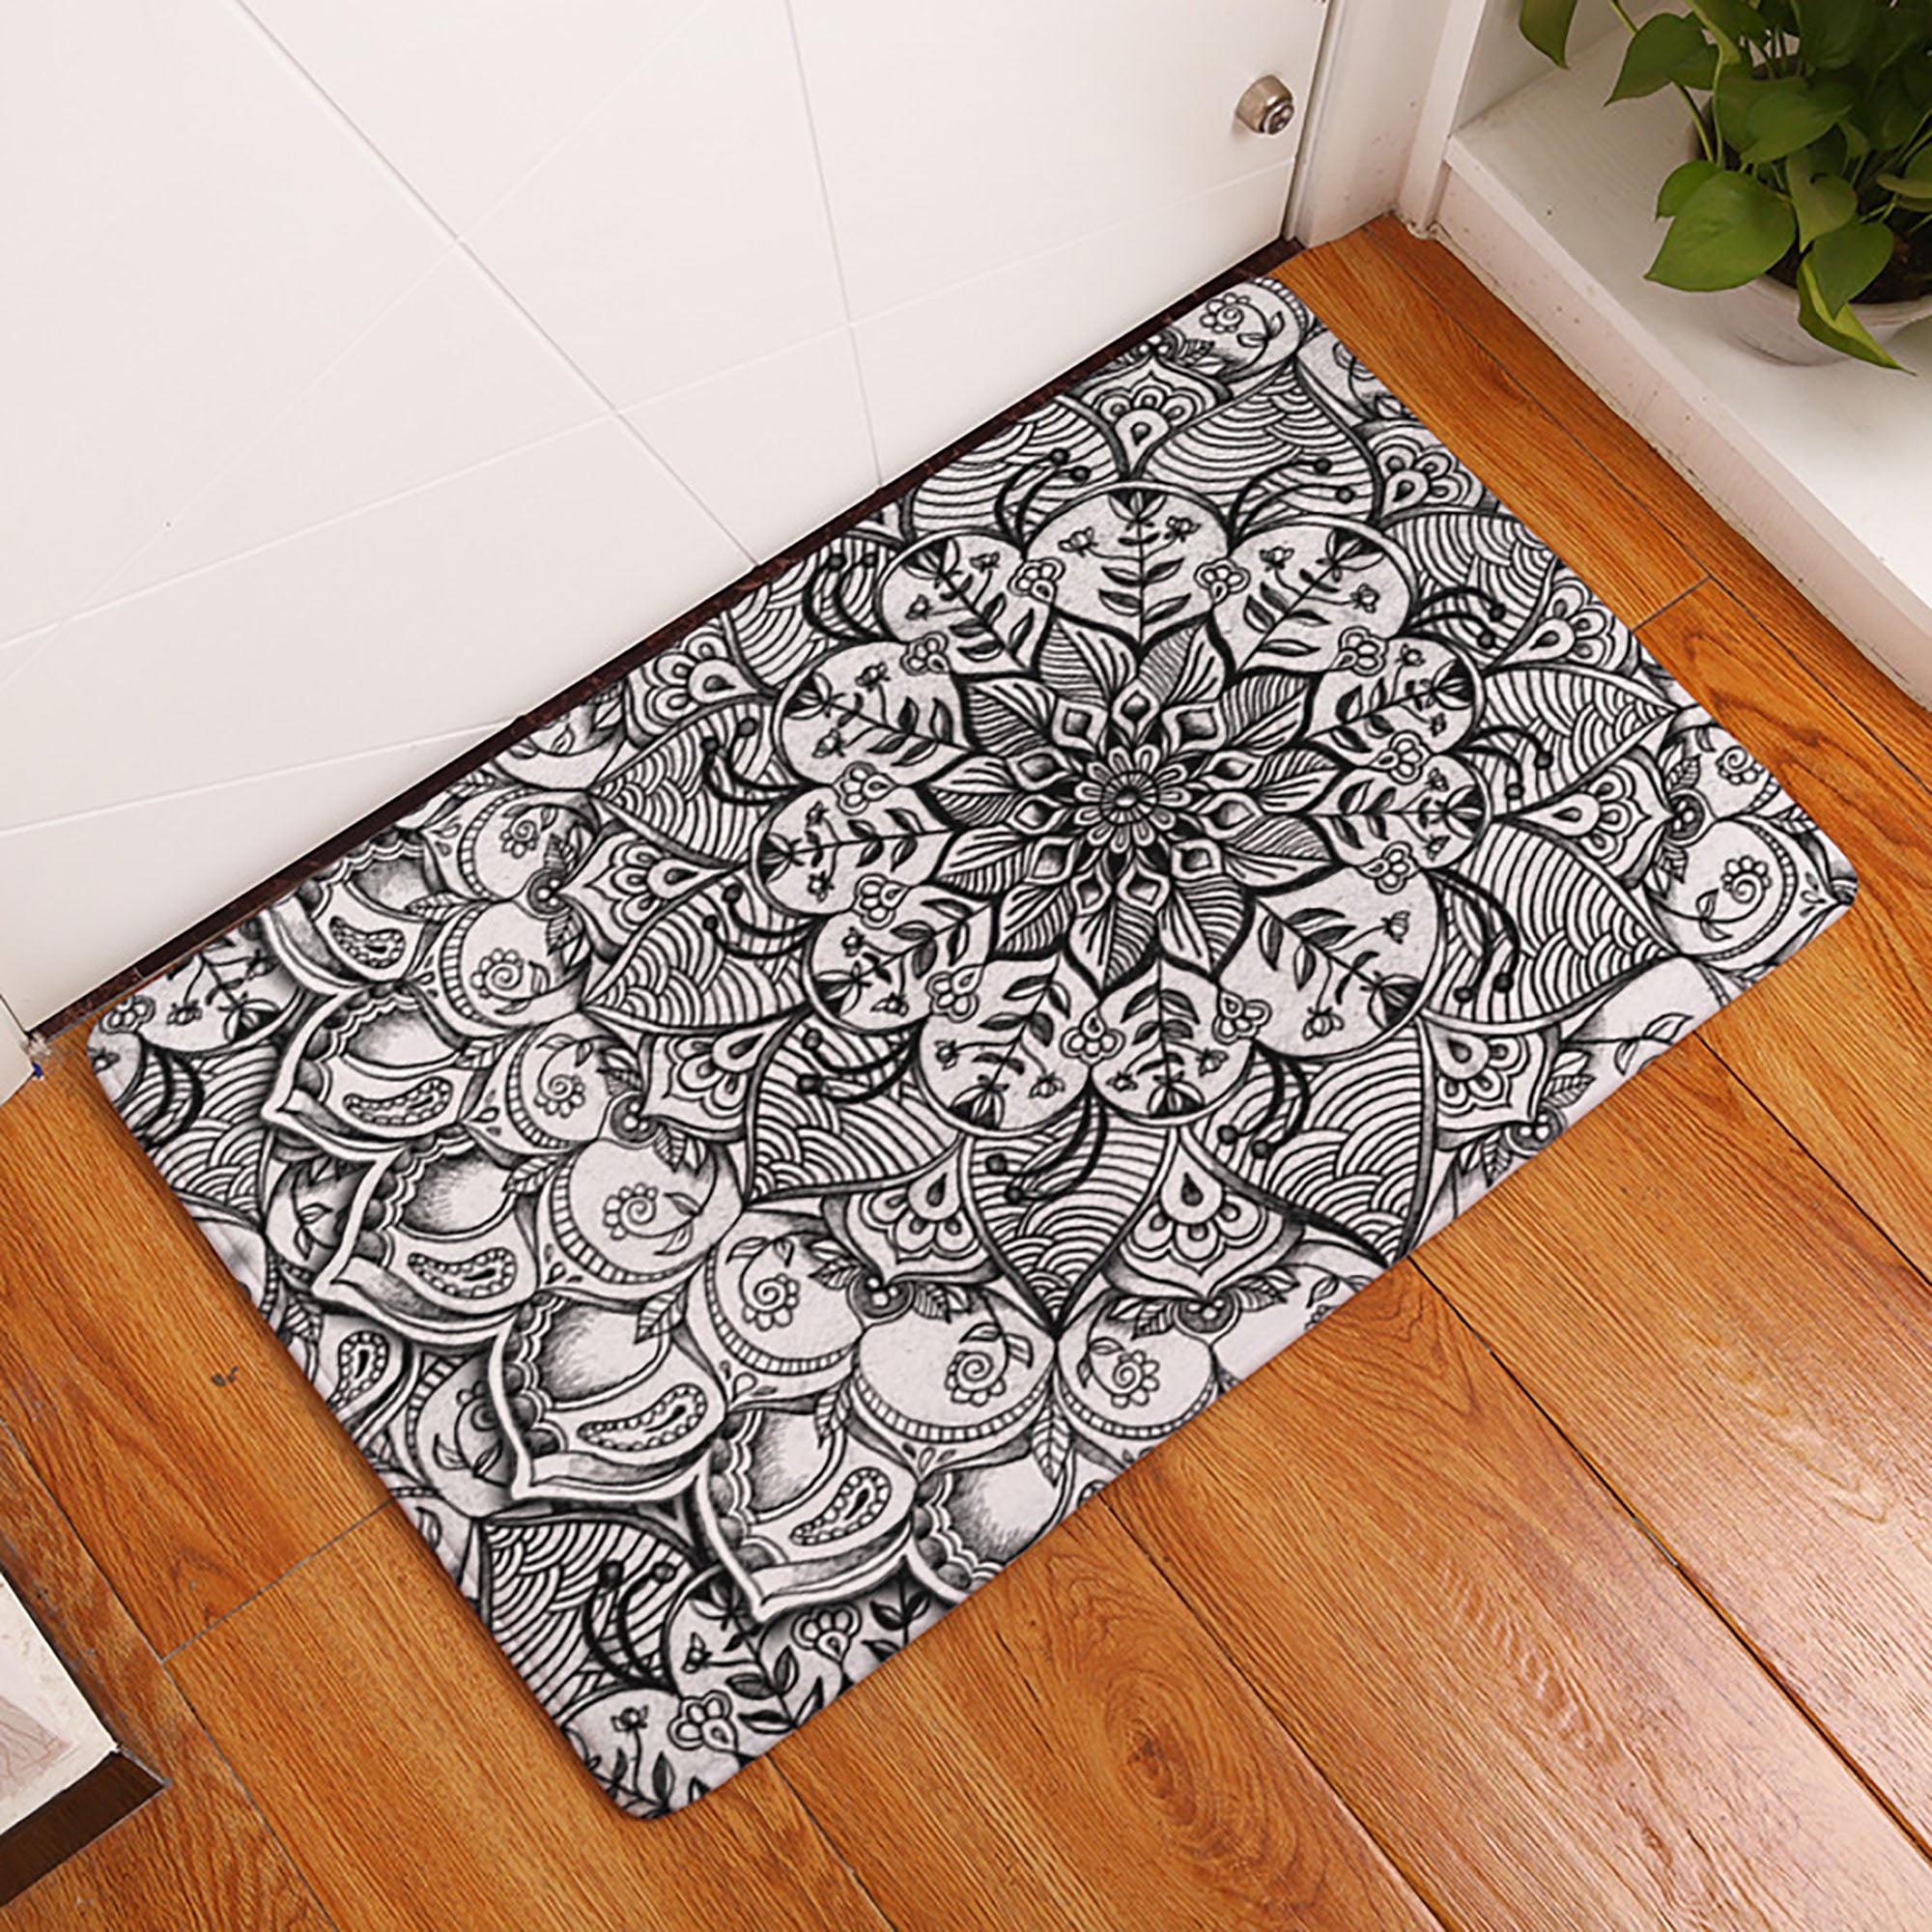 Novelty Doormat Heavy Duty Nonslip Entrance Rug Printed Floor Mat Indoor/Outdoor